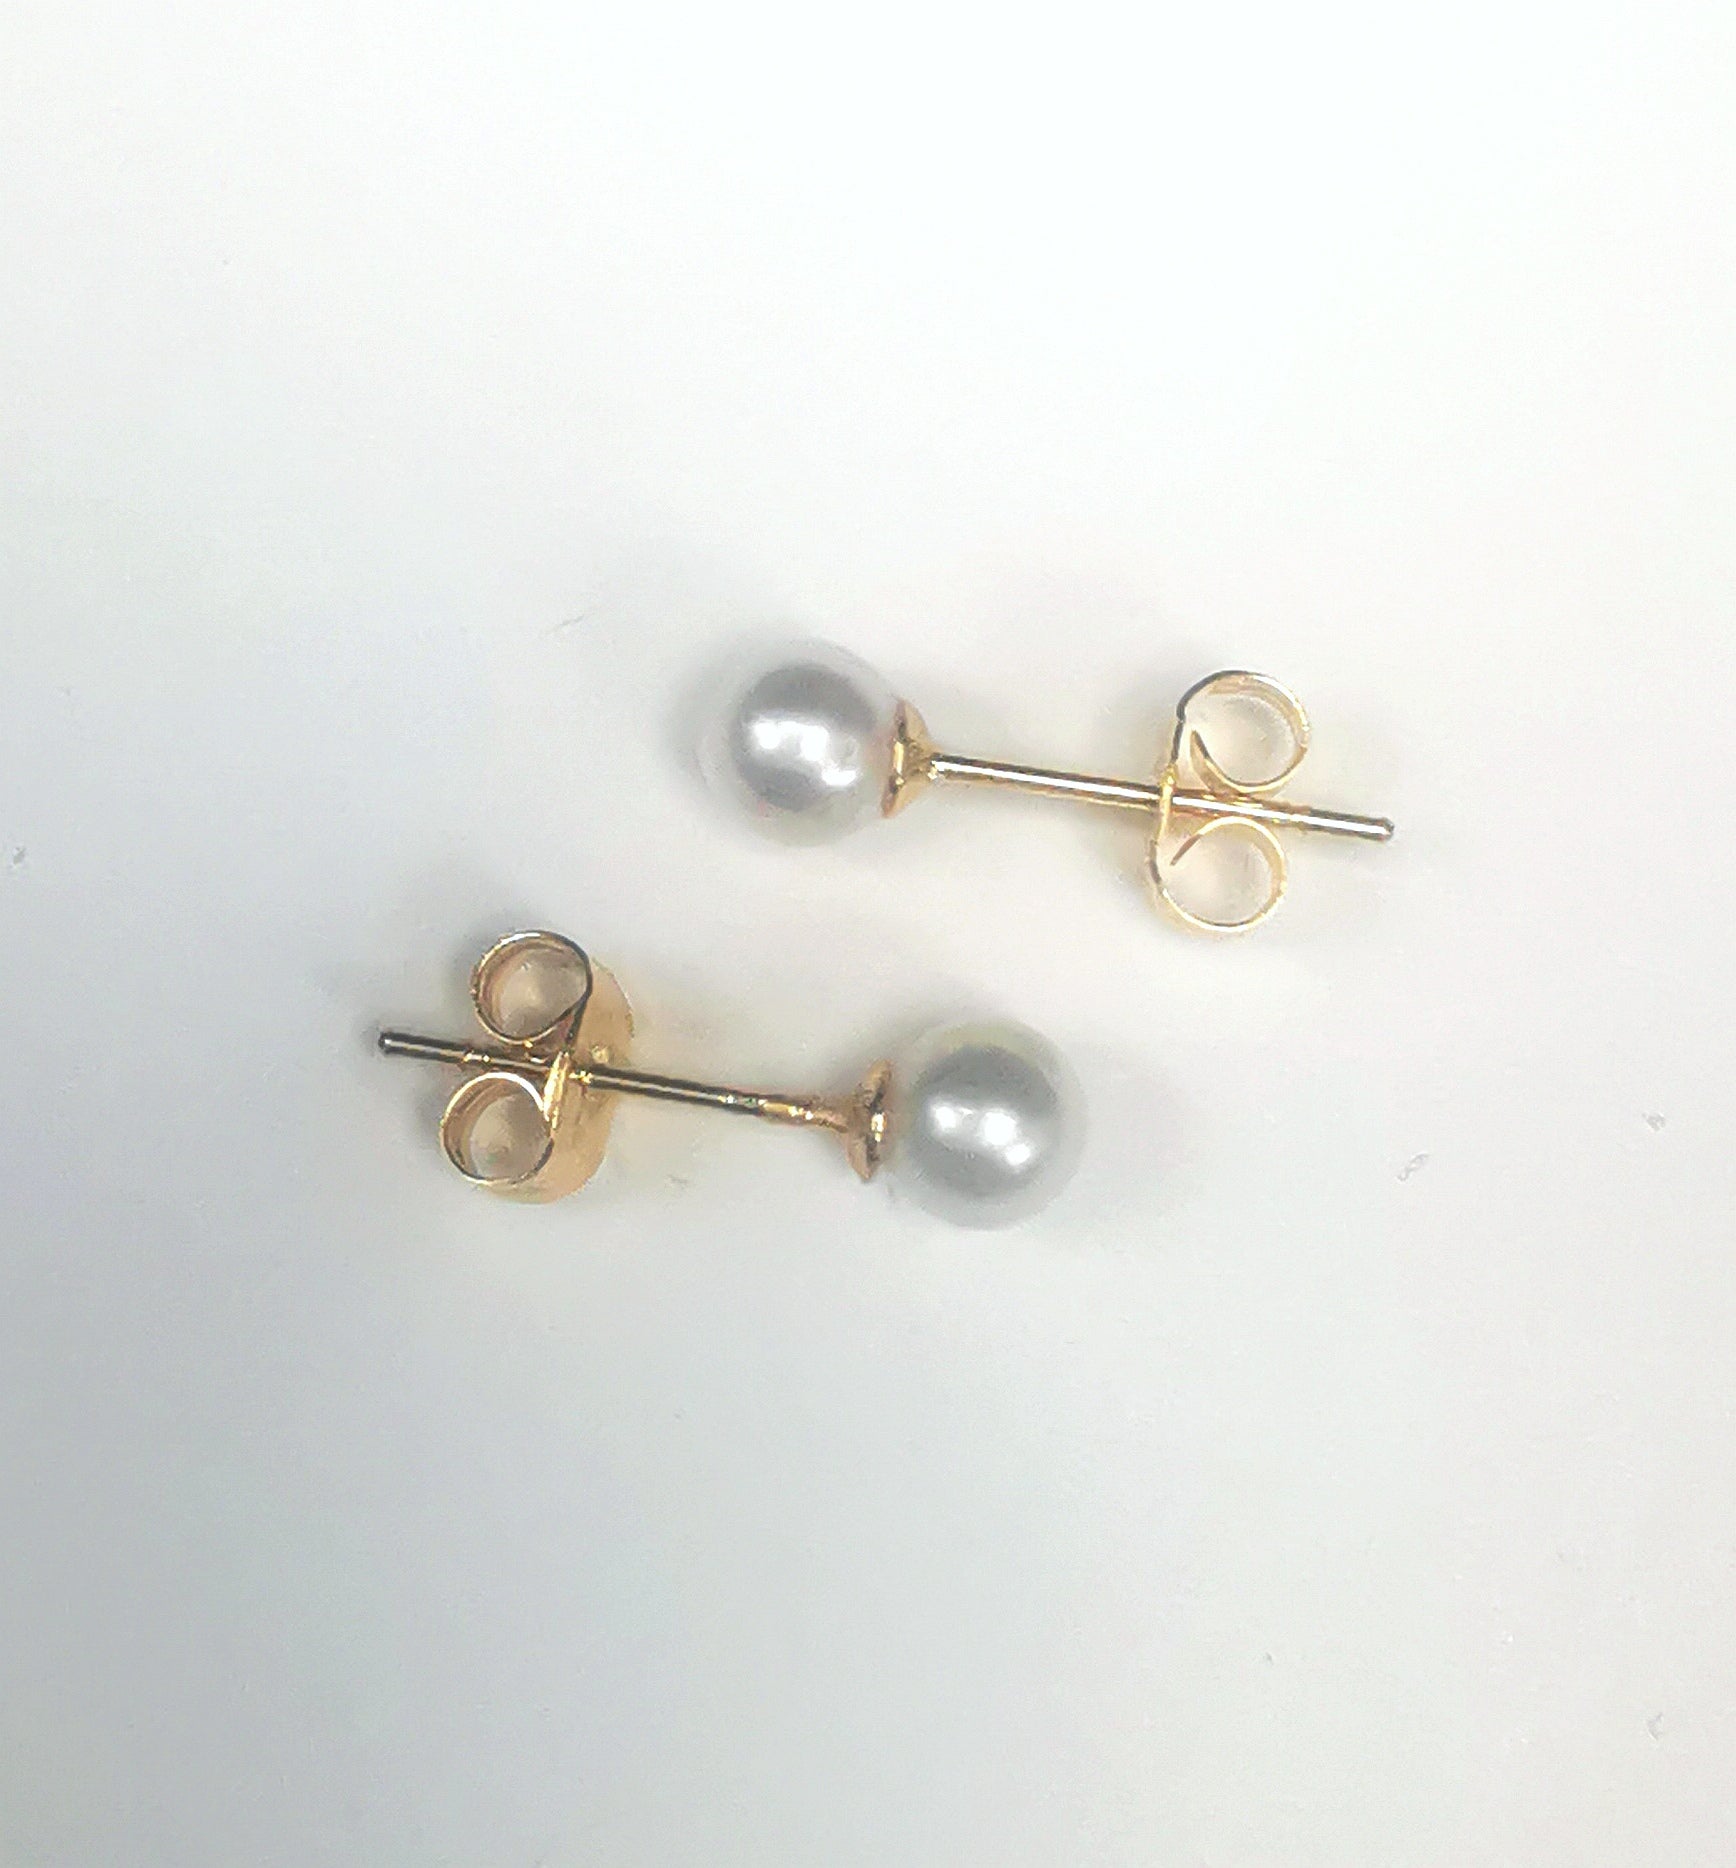 Boucles d'oreilles perles de culture blanches rondes 5mm montées sur clous plaqués or. Présentées horizontalement, celle de dessus perle à gauche, celle de dessous perle à droite, sur fond blanc. Vue de dessus.